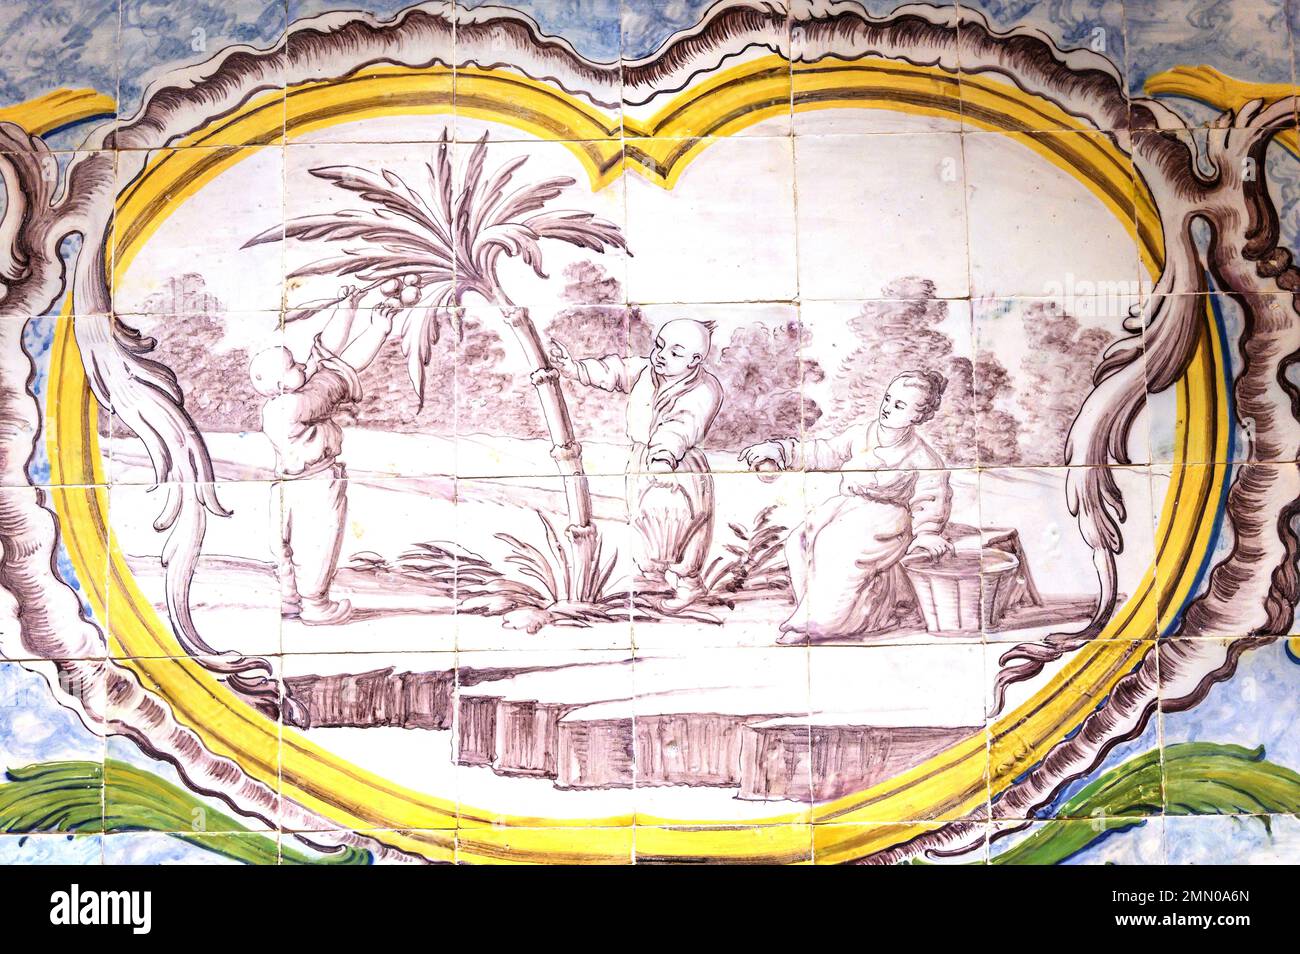 Portugal, région de l'Alentejo, ville d'Estremoz, Museuu Berardo Estremoz dans le palais de Tochjia, oreintaliste céramique de 1760 Banque D'Images